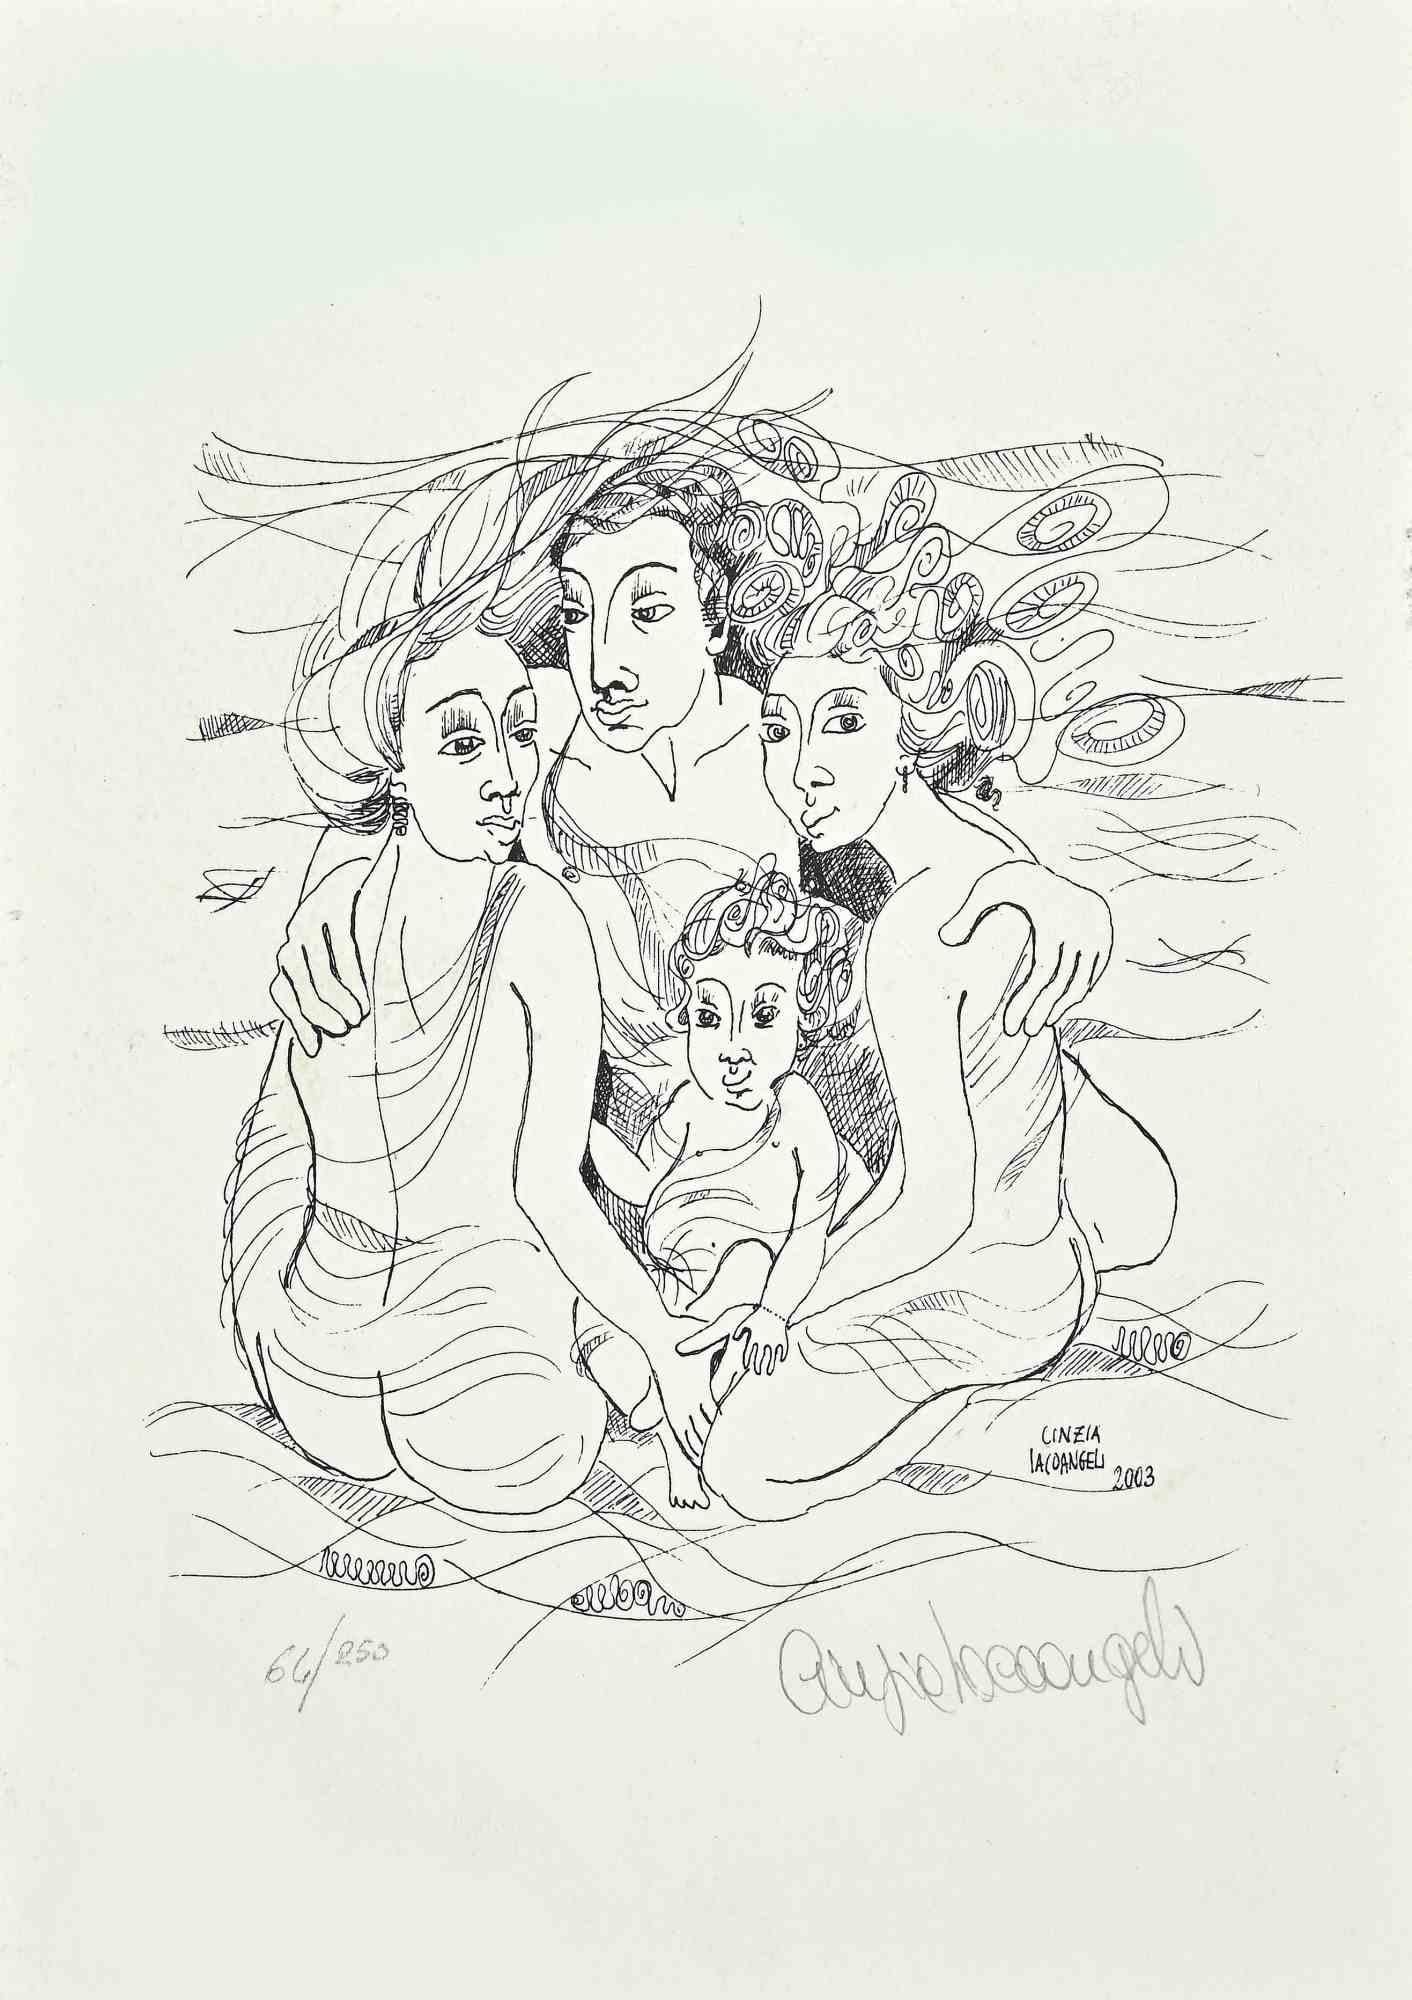 La Famille est une lithographie originale sur papier, réalisée par Cinzia Iacoangeli en 2003.

Le statut de bien de conservation.

L'œuvre d'art est dépeinte habilement par des lignes sûres et fortes, avec une composition harmonieuse.